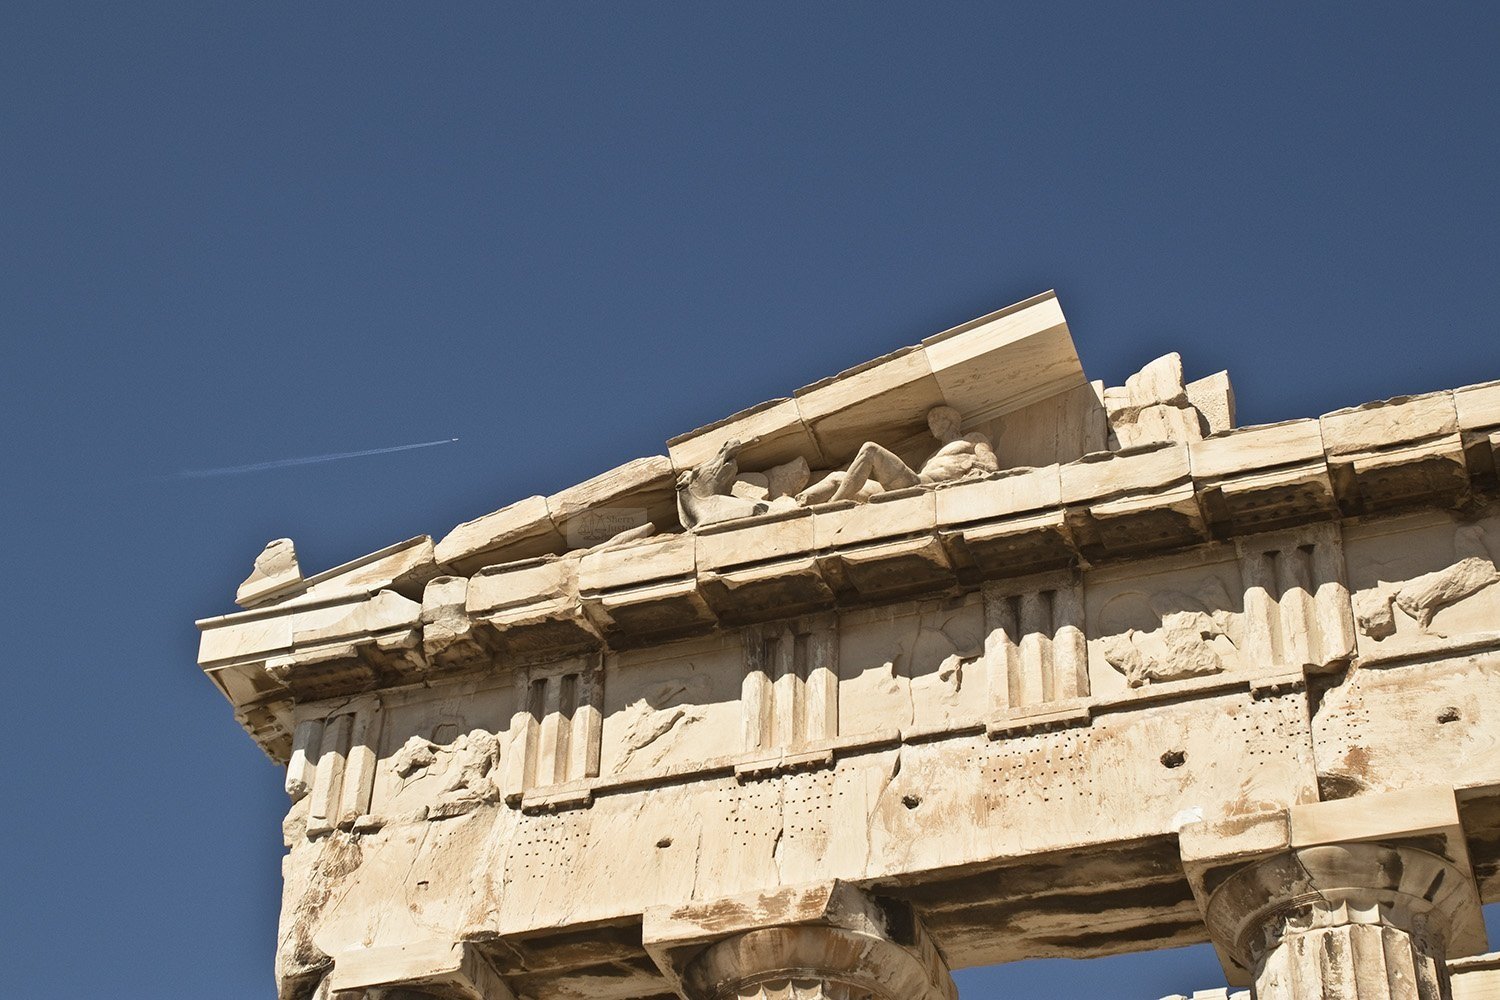 Parthenon.jpg